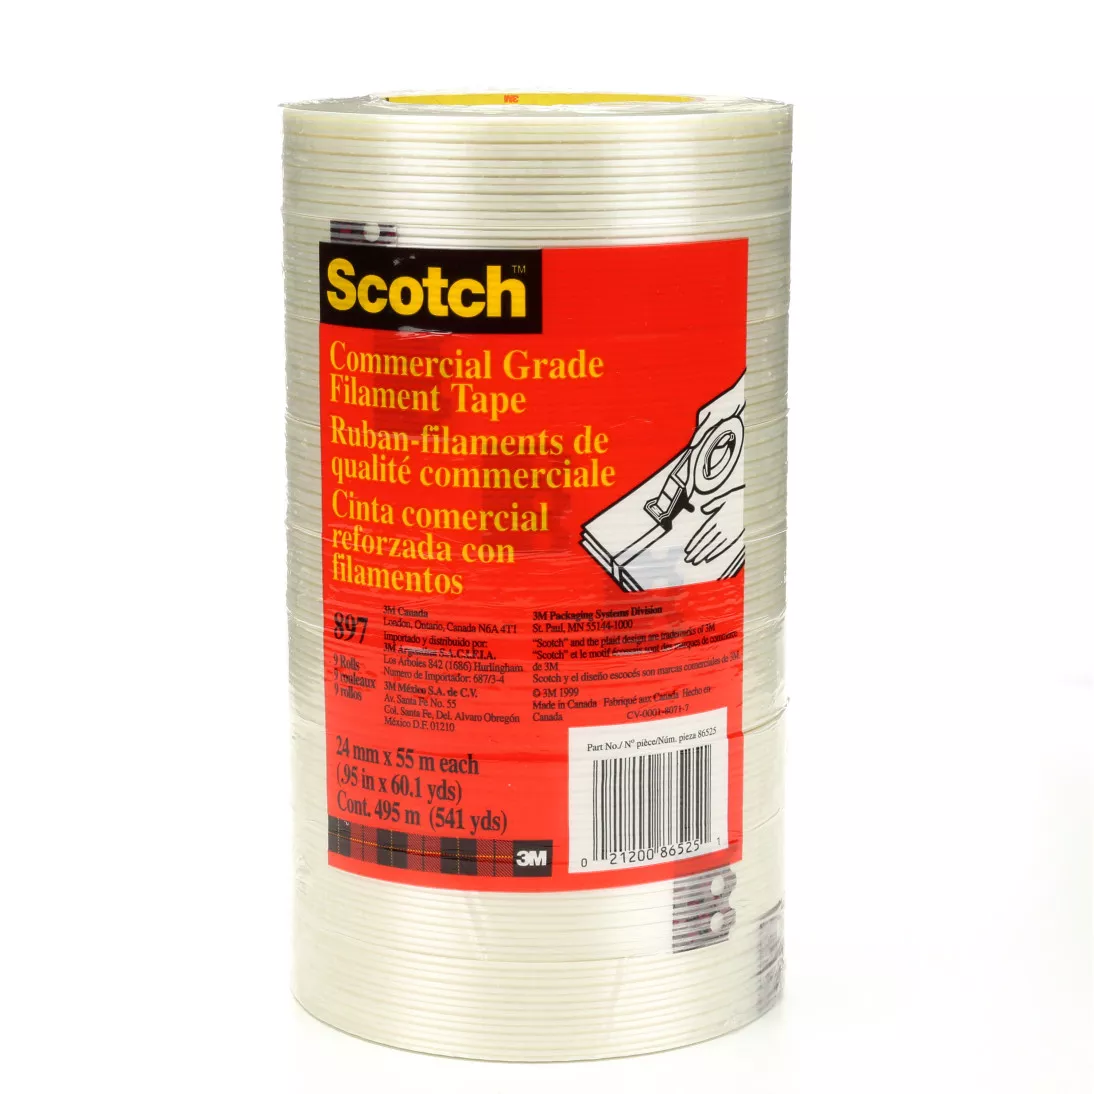 Scotch® Filament Tape 897, Clear, 24 mm x 55 m, 5 mil, 36 Rolls/Case